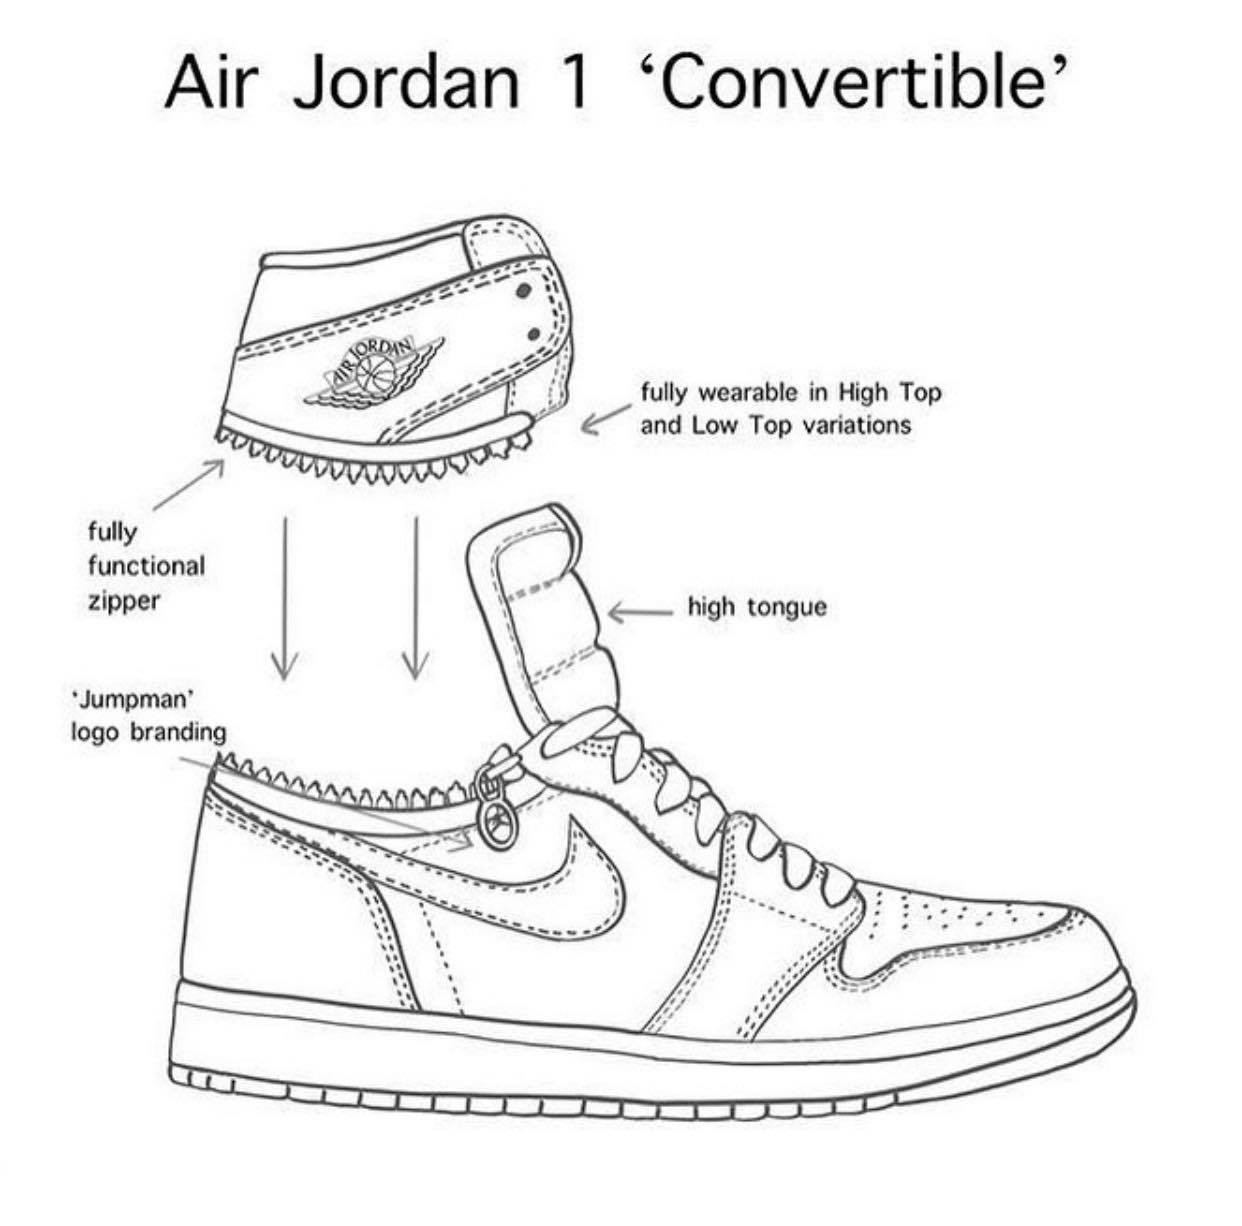 Giày Jordan 1, một trong những đôi giày thể thao nổi tiếng nhất mọi thời đại. Sở hữu thiết kế phá cách và khoảng màu sắc tuyệt đẹp, giày Jordan 1 đã từng được trang bị cho \